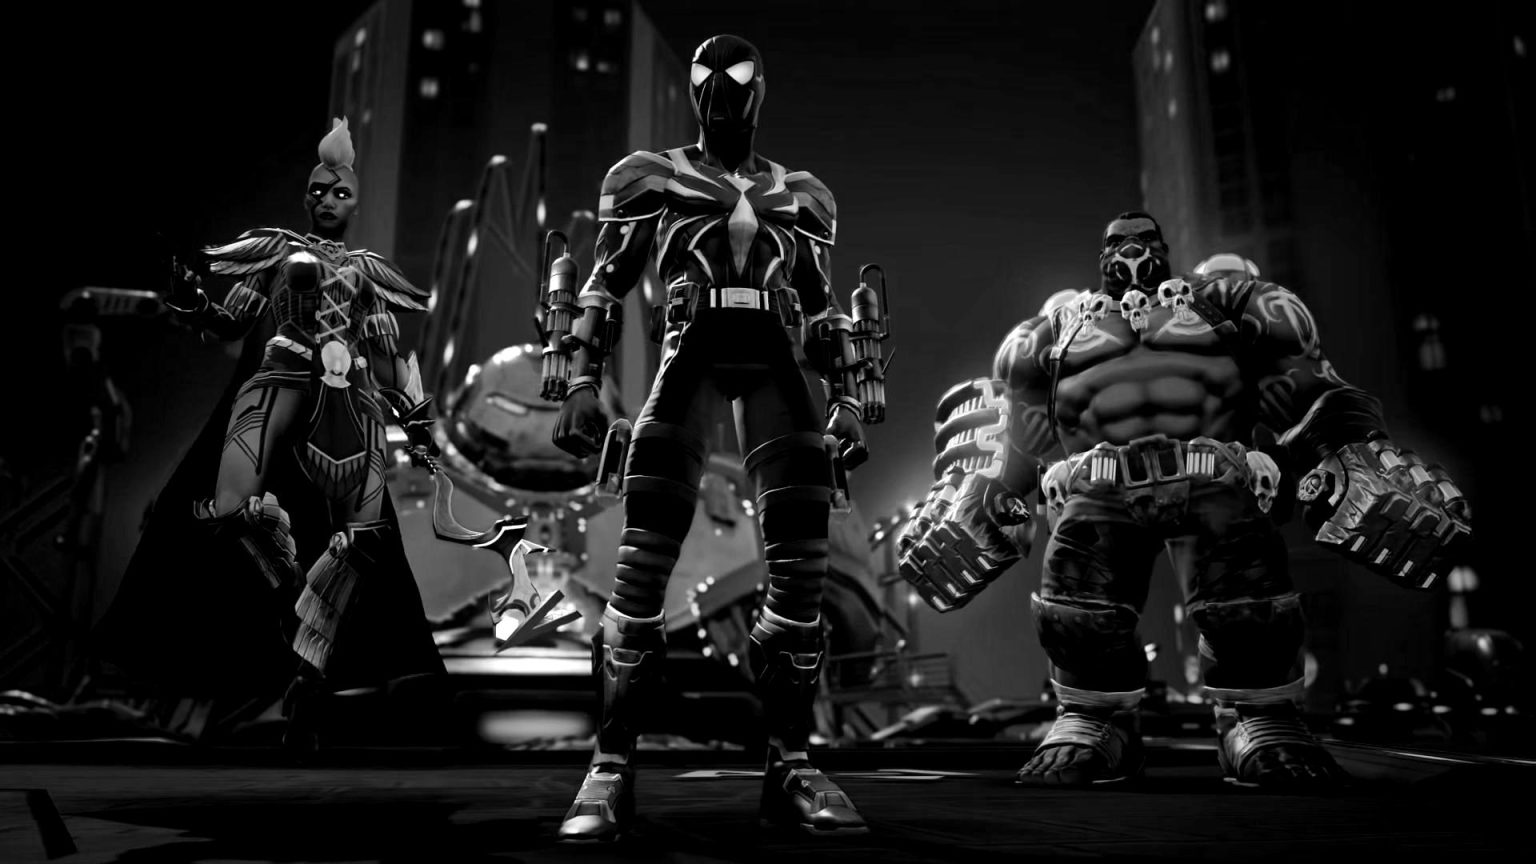 Kabam anuncia el cierre de Marvel Realm of Champions, el juego ya no se puede descargar y sus servidores se cierran en marzo.